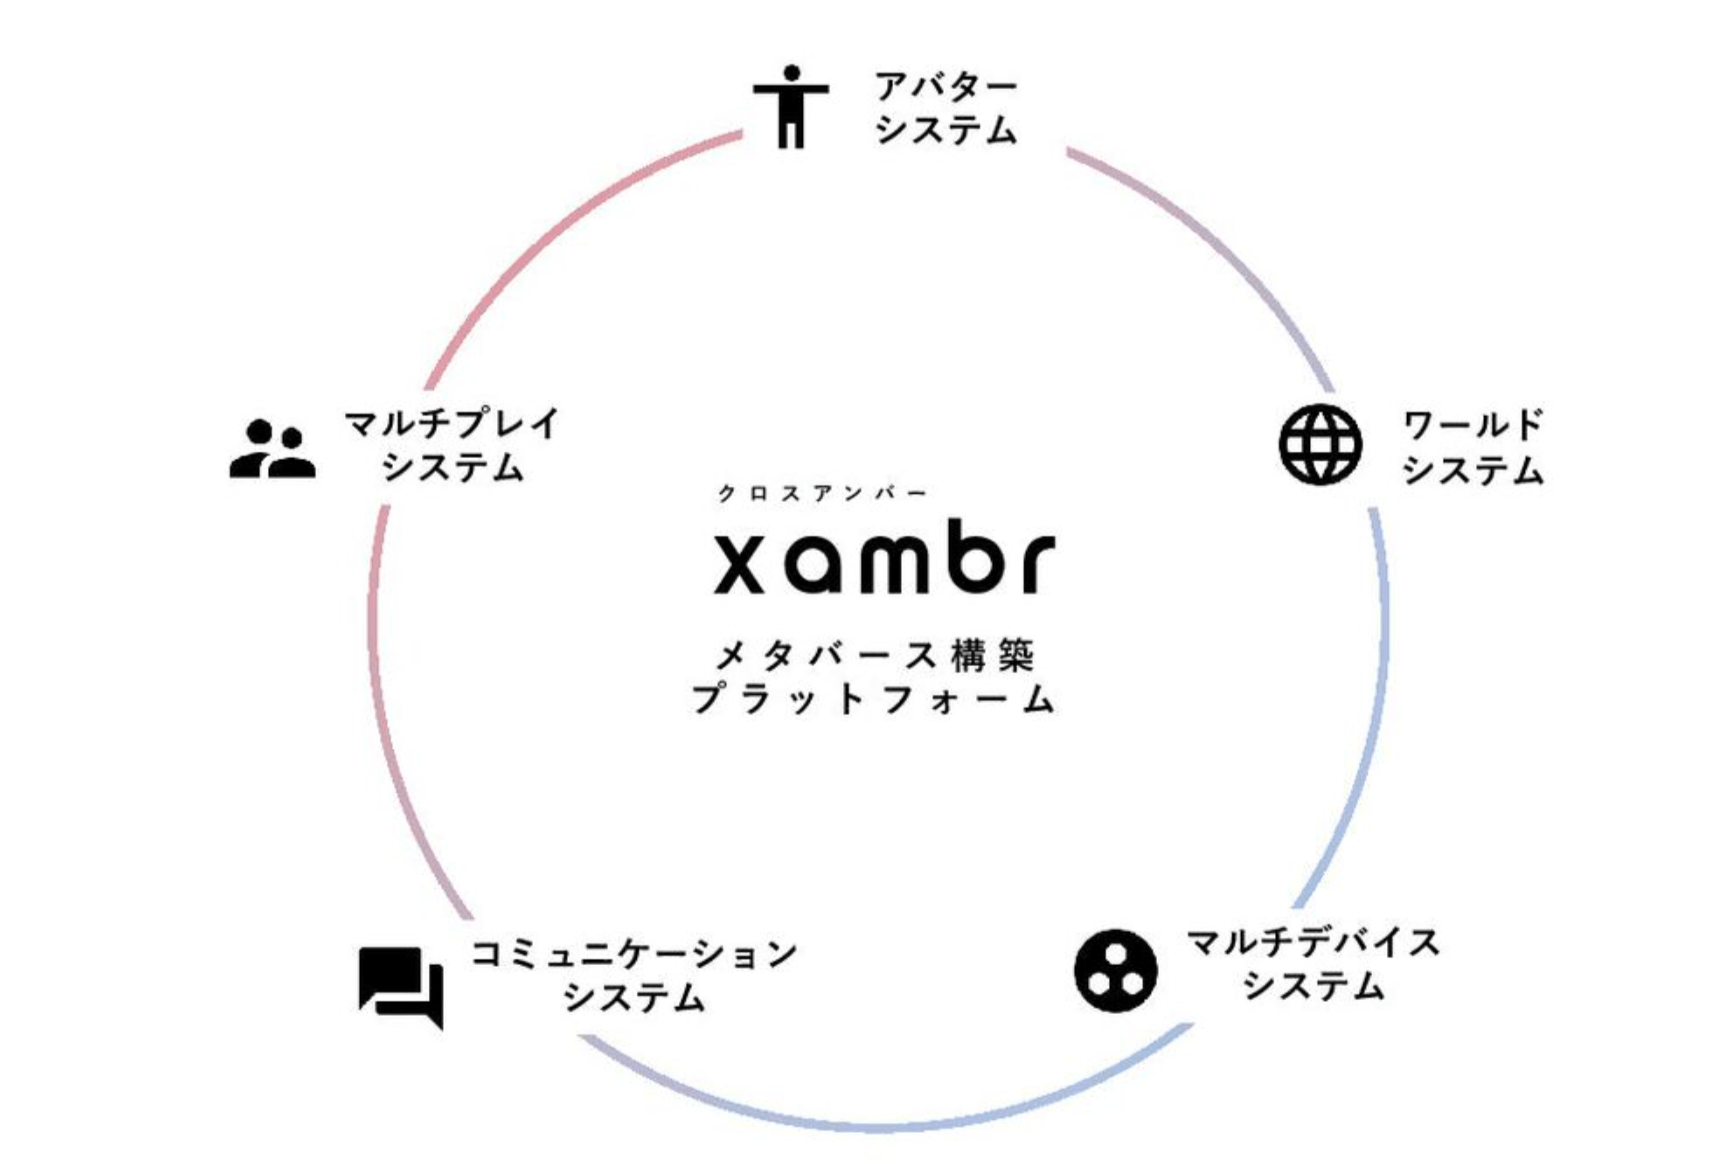 メタバース基盤「xambr」のイメージ